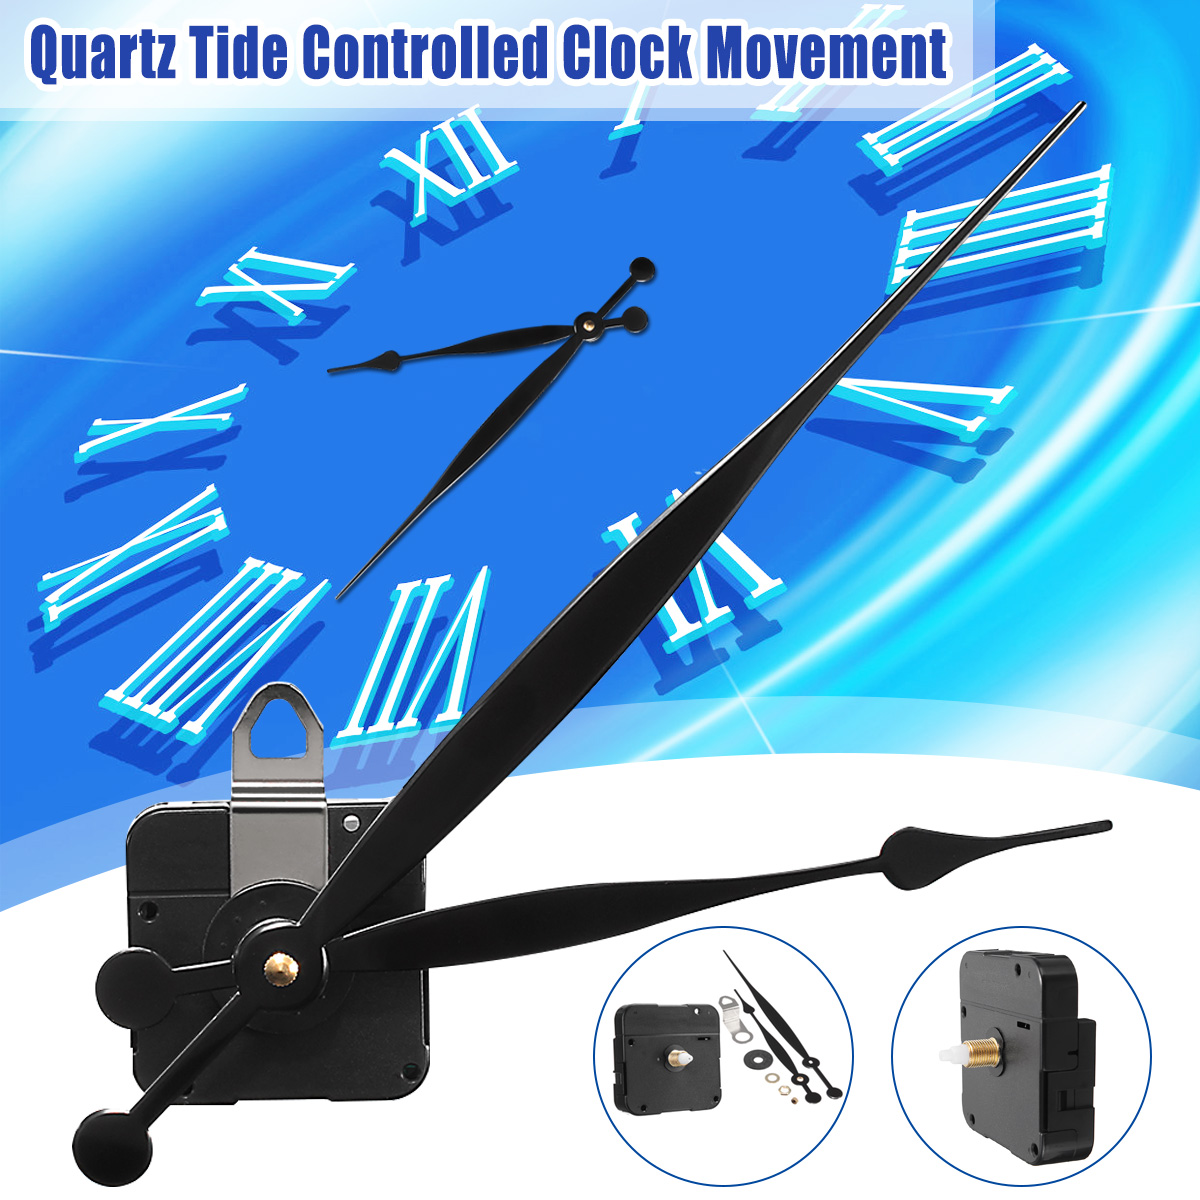 Long-Hand-Quartz-Clock-Movement-Mechanism-Motor-High-Torque-Hour-Minute-Hands-DIY-Module-Kit-1333713-1